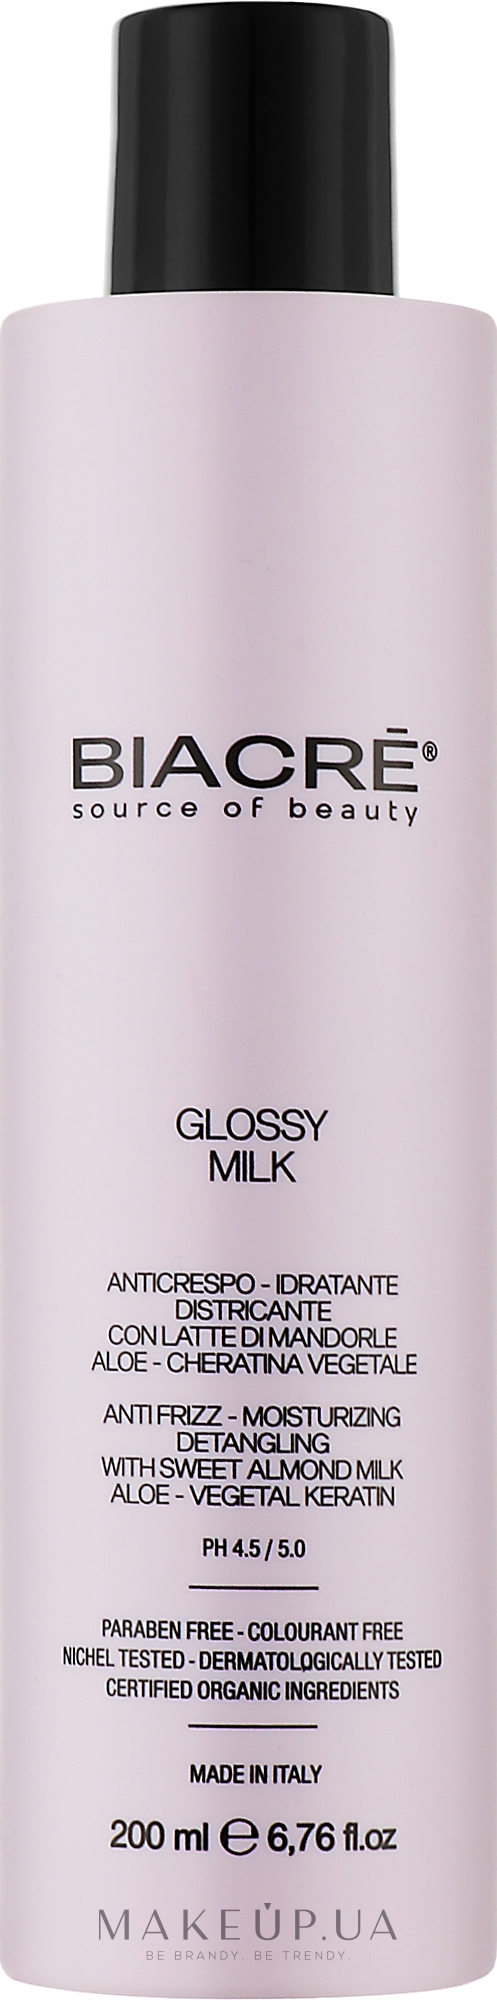 Зволожувальне молочко для волосся з біокератином - Biacre Glossy Milk — фото 200ml